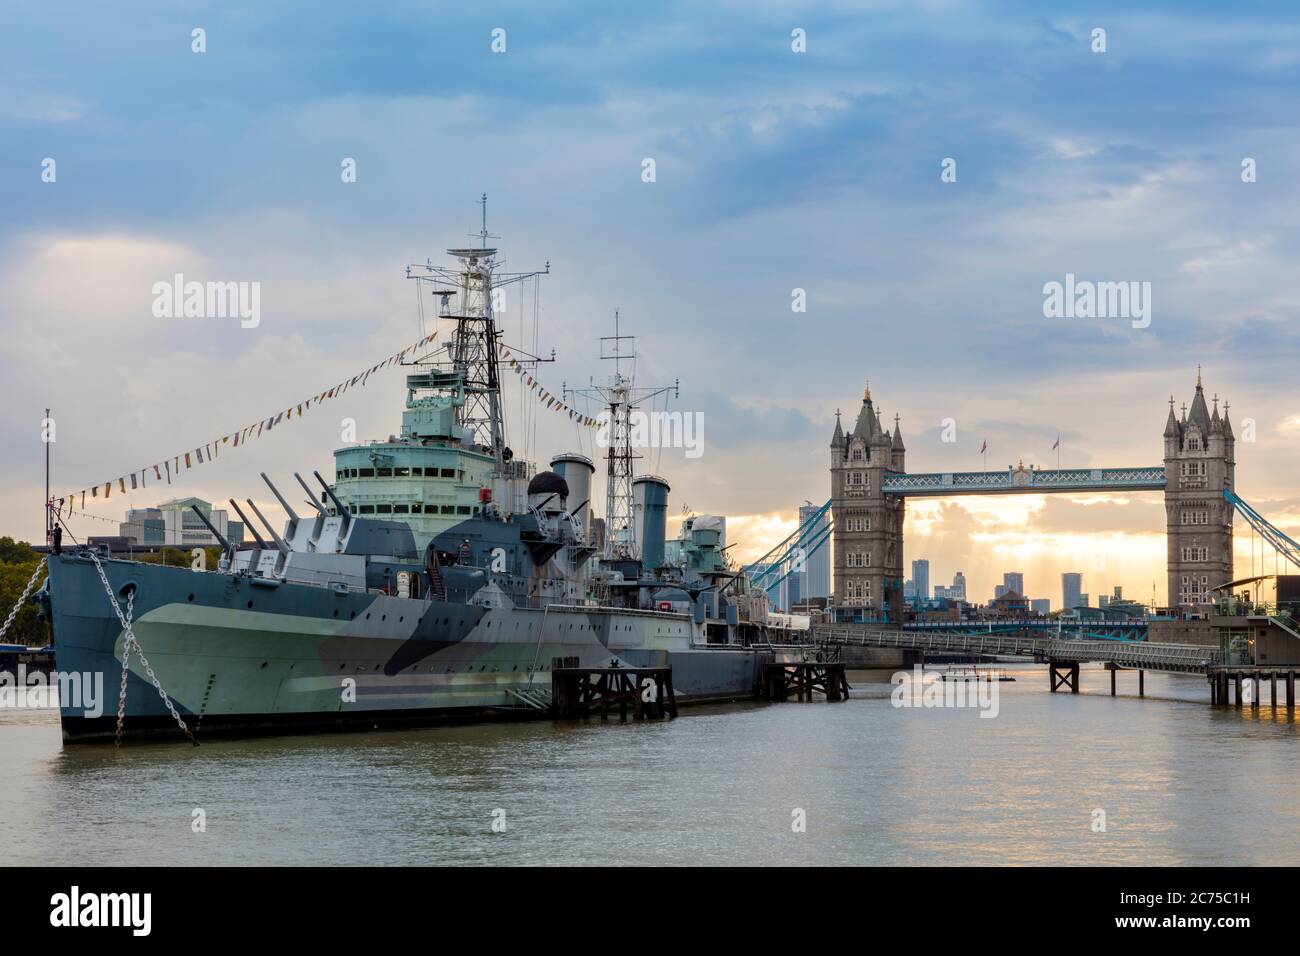 La Deuxième Guerre mondiale, Town-Class croiseur HMS Belfast (Pers. 1938), maintenant un musée flottant près du Tower Bridge sur la Tamise, Londres, Angleterre, Royaume-Uni Banque D'Images